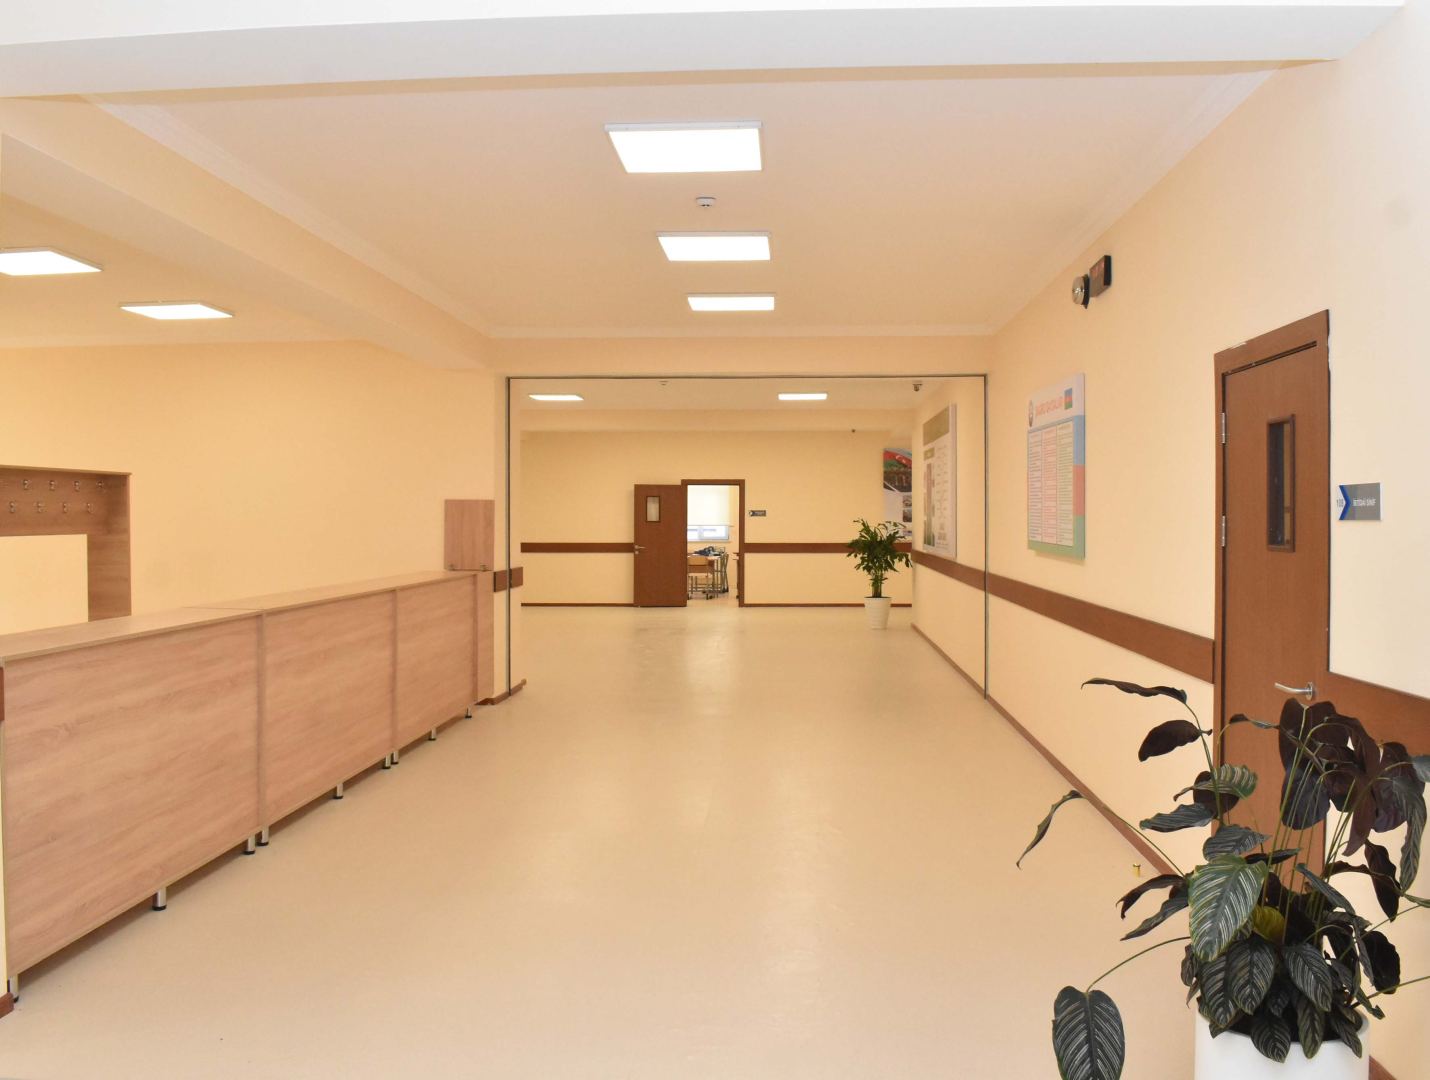 Построенная Фондом Гейдара Алиева 500-ая школа сдана в эксплуатацию (ФОТО)